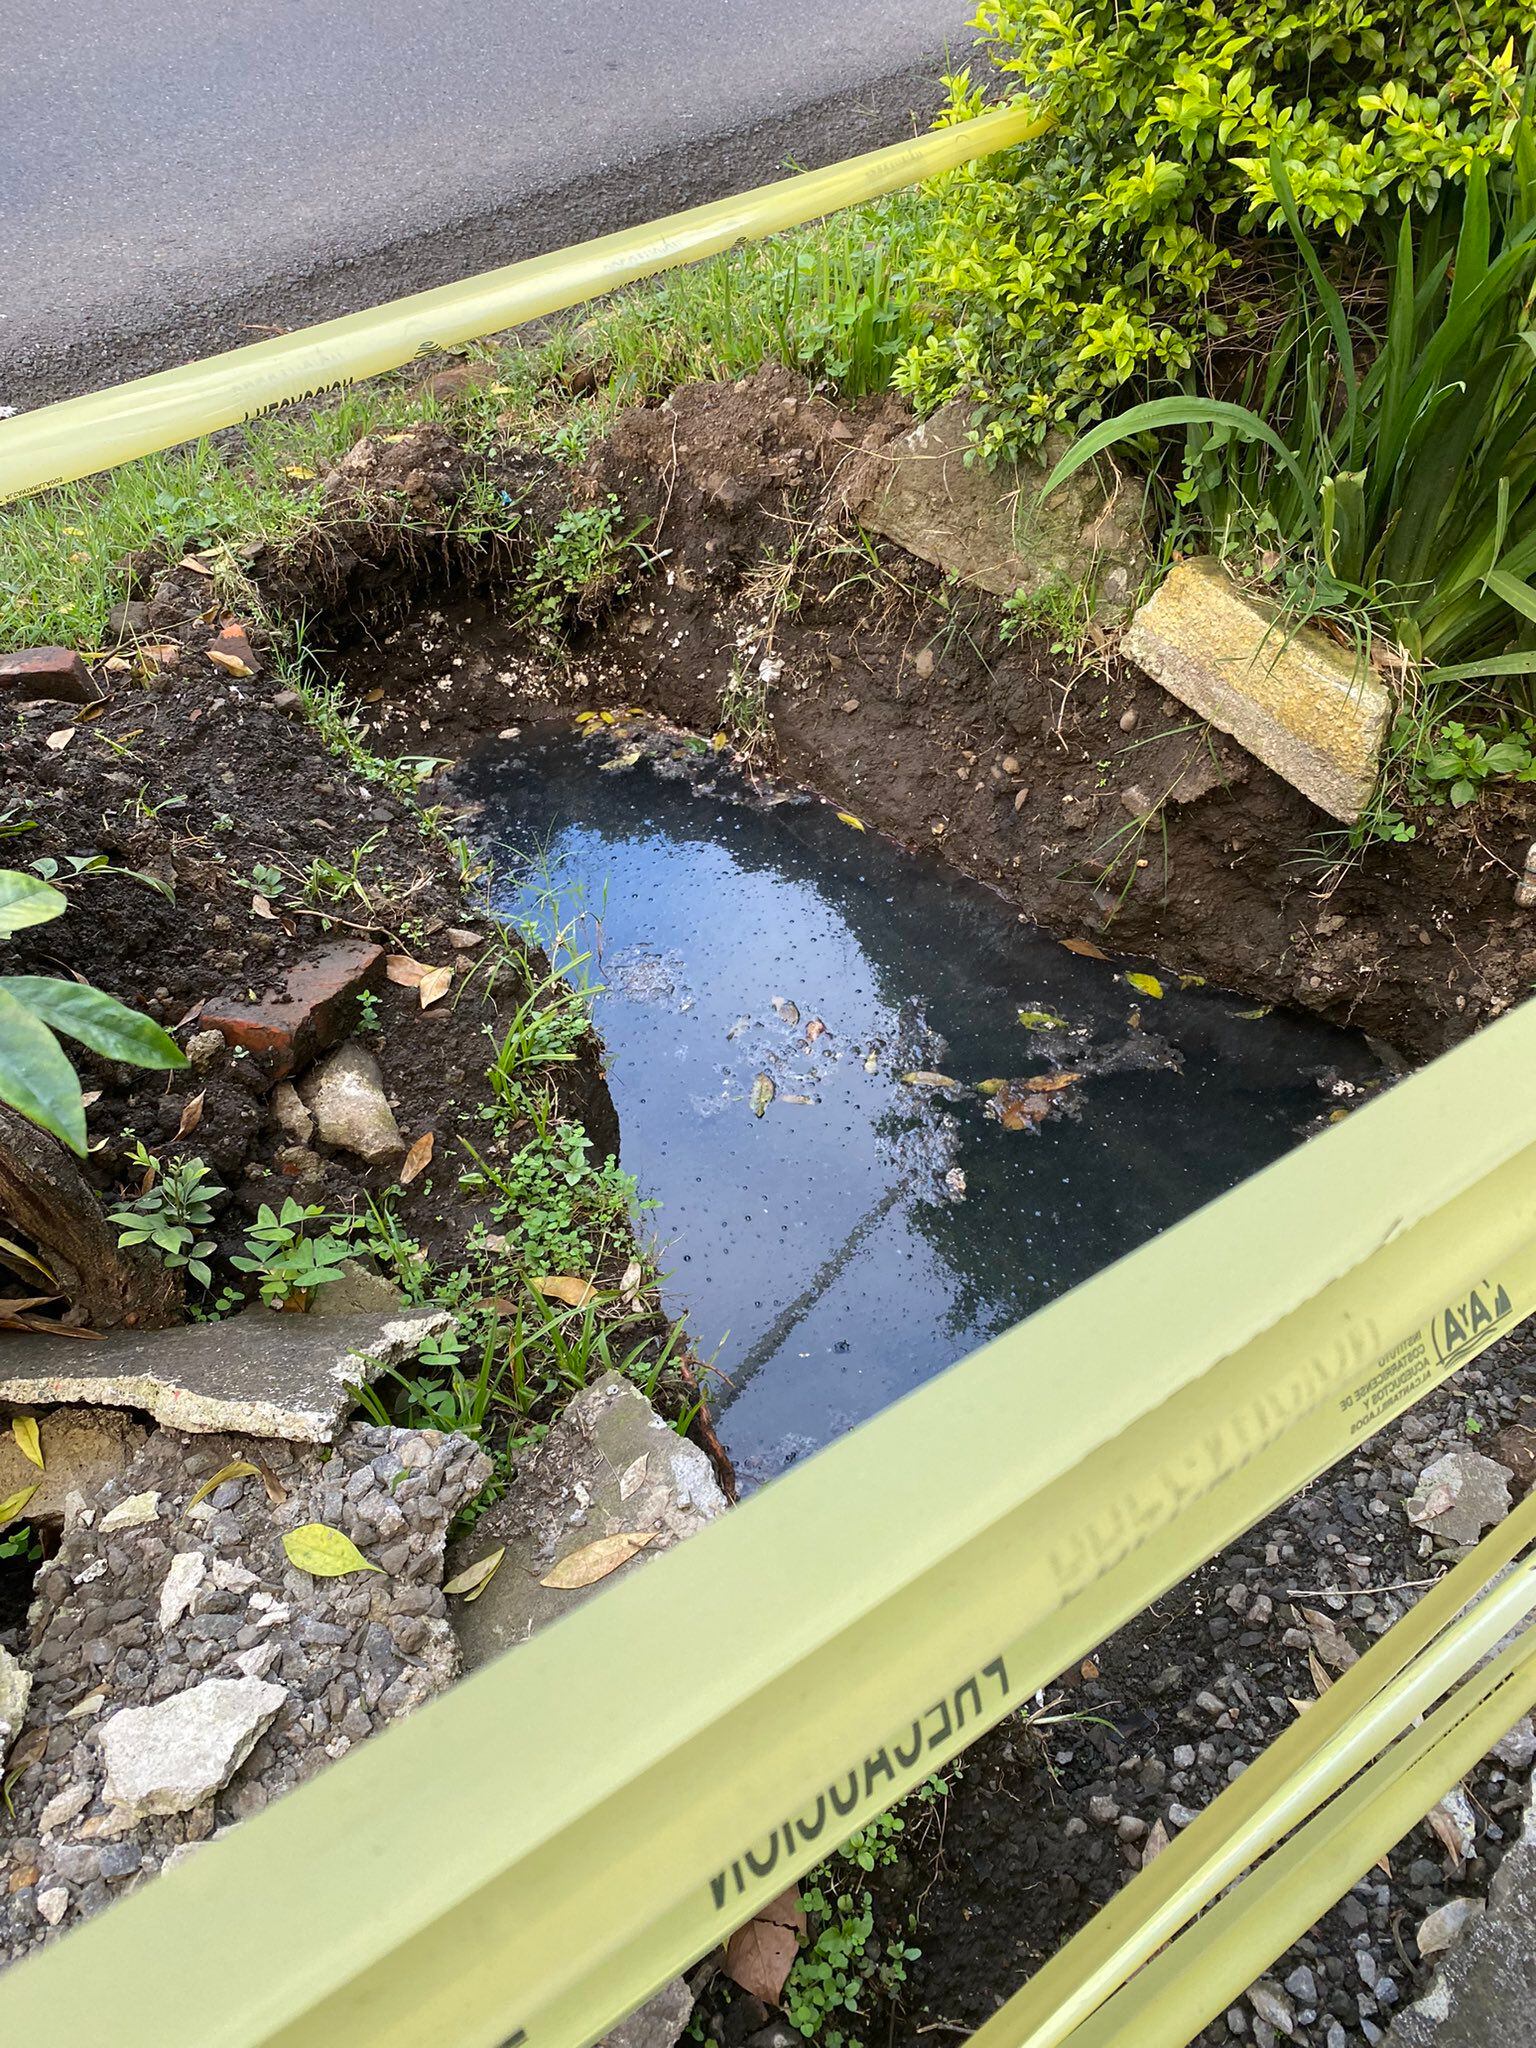 Los vecinos temen que el agua contaminada atraiga plagas a la concurrida vía josefina. Foto: tomada del Twitter @lepetitebrave